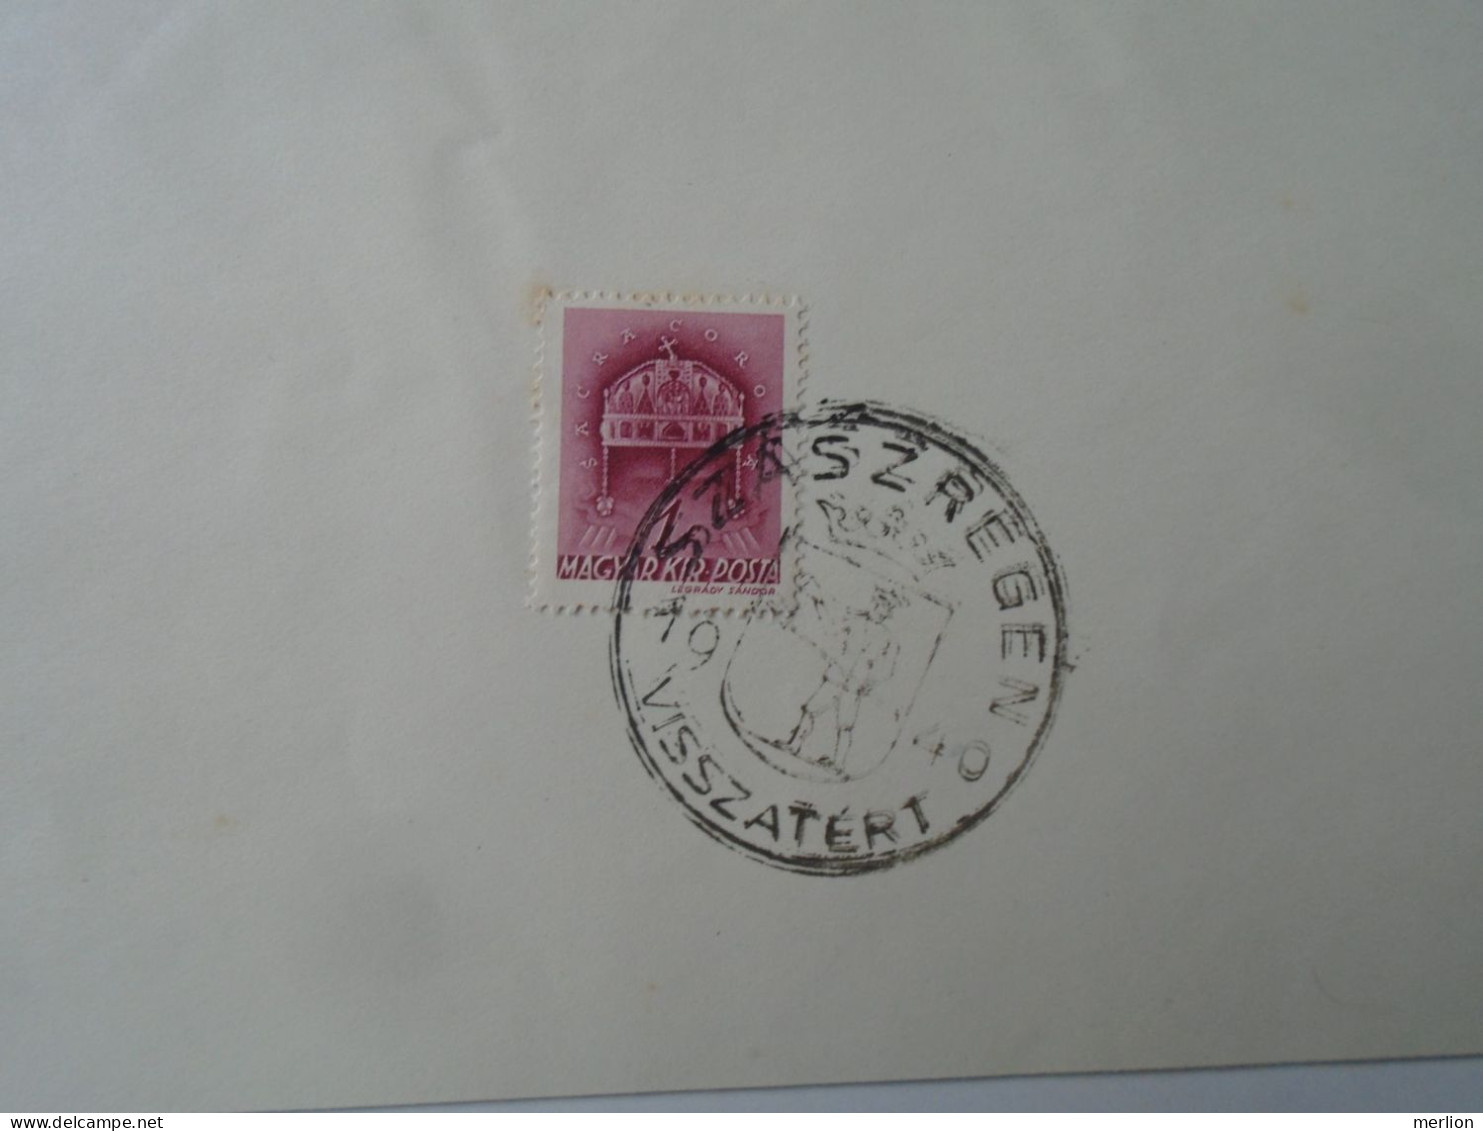 ZA451.18 Hungary  - Szászrégen, Szamosújvár, Marosvásárhely, Kolozsvár Visszatért -Commemorative Postmark 1940 - Postmark Collection